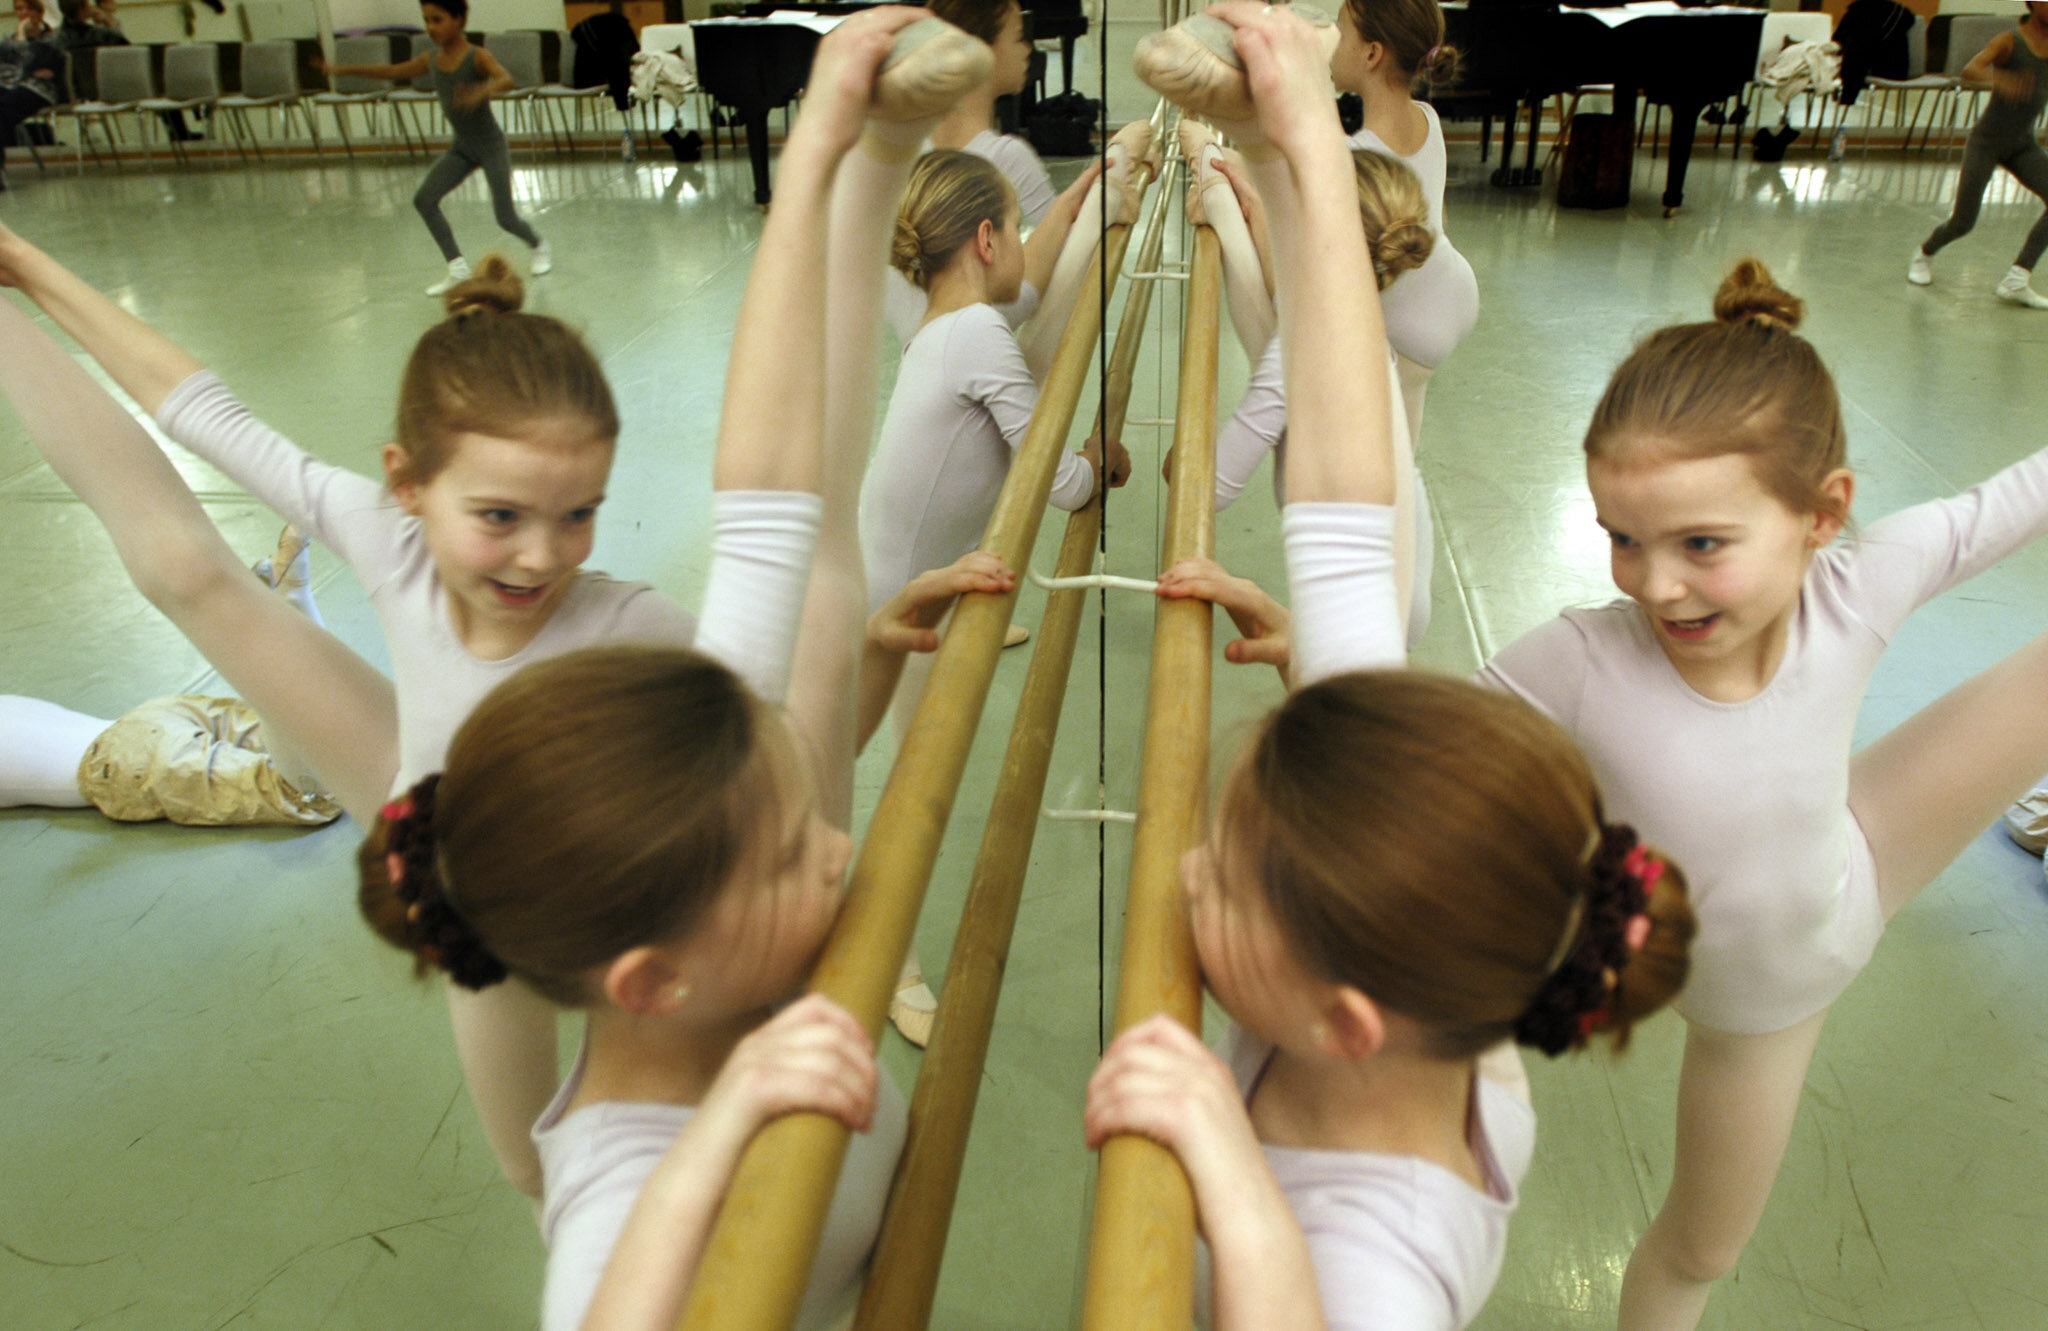    Children's ballet school, Holstebro Denmark    kids stretching next to mirror 